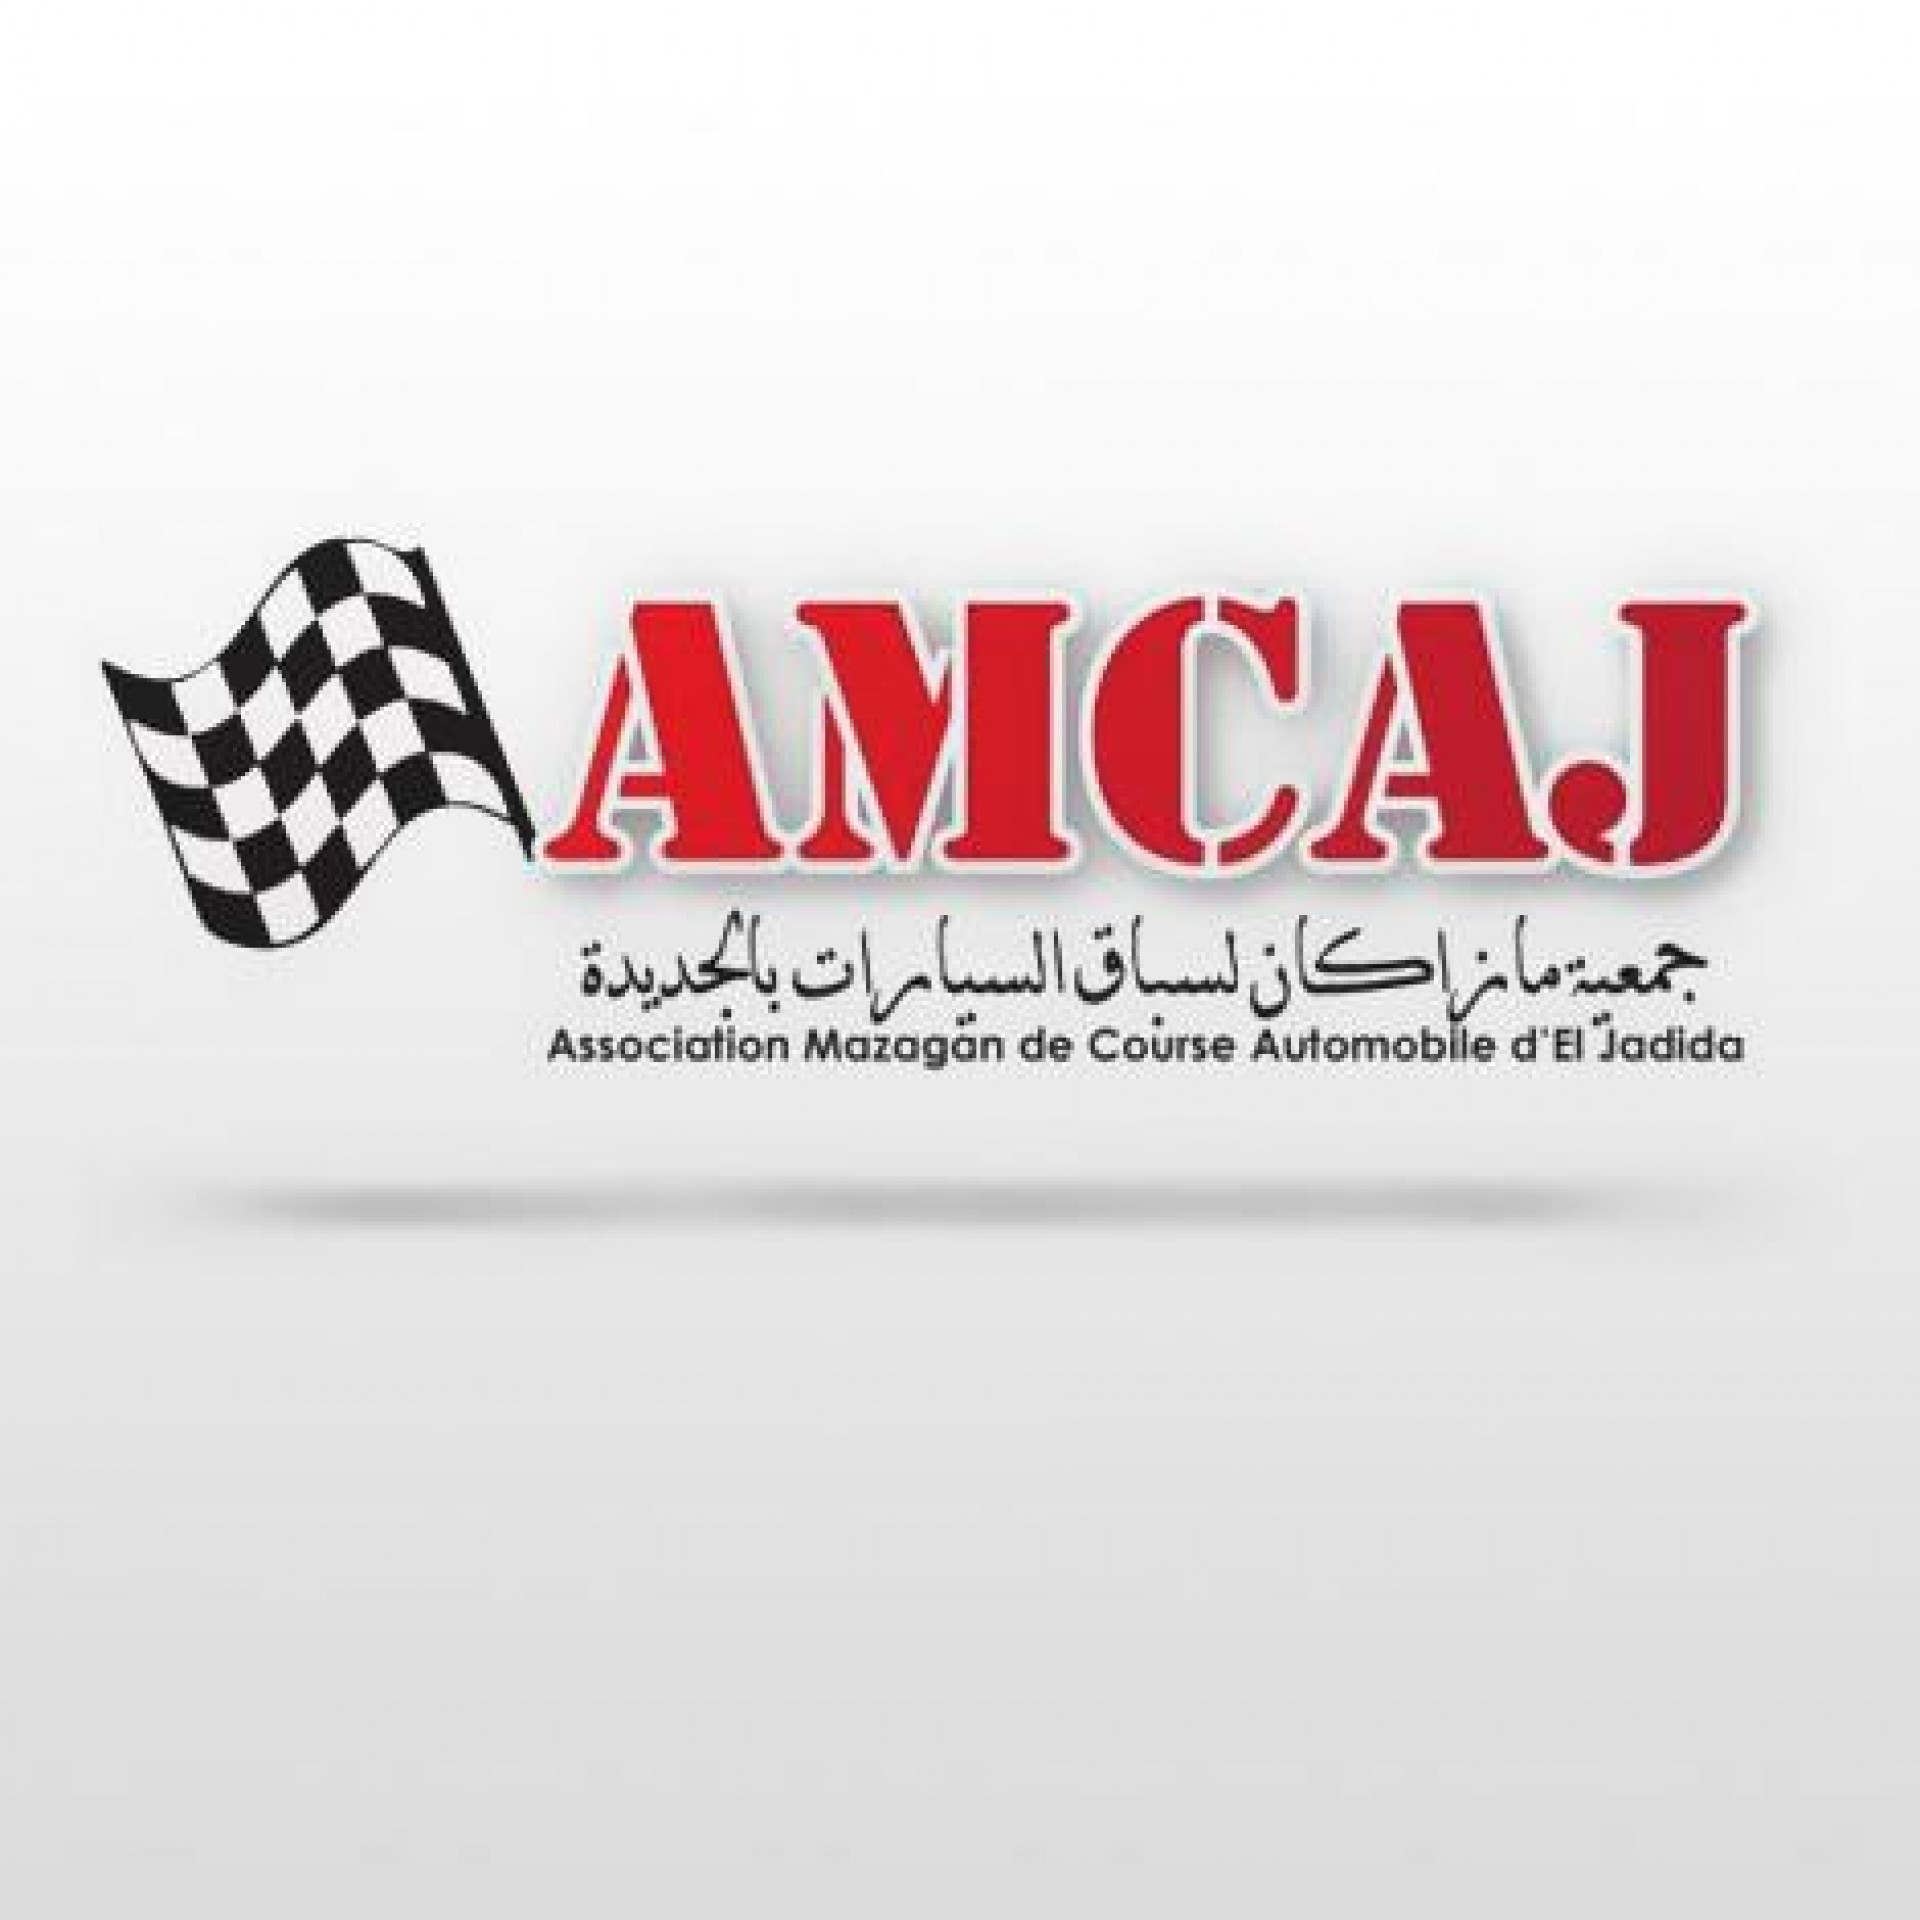 Association Mazagan de Course Automobiles d’El Jadida (AMCAJ) logo